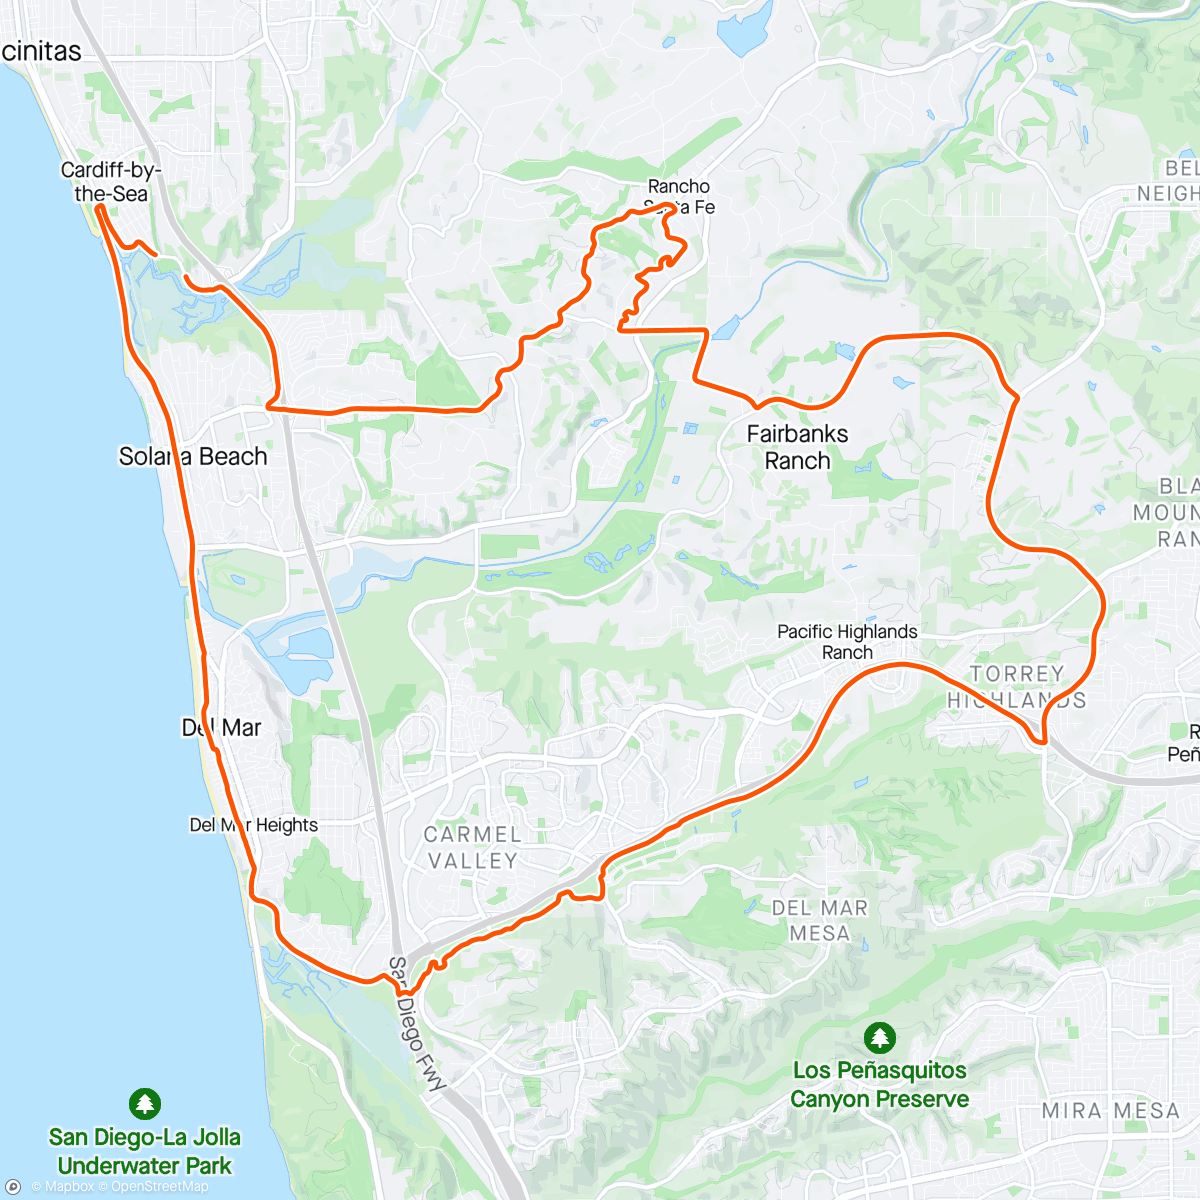 活动地图，56 bike path and Rancho Santa Fe